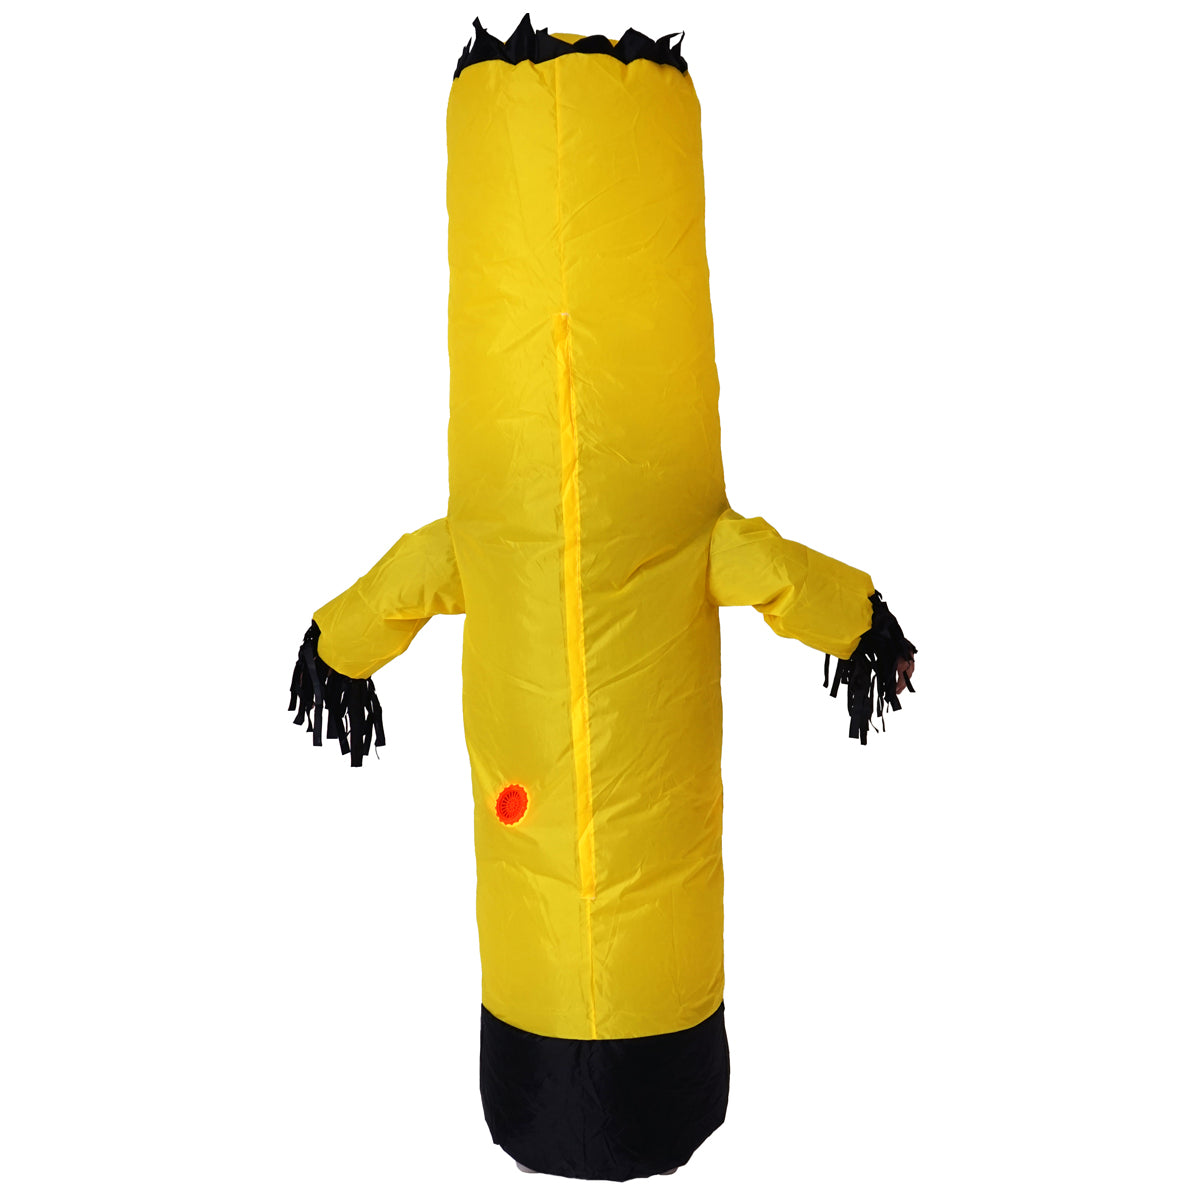 Bodysocks - Inflatable Tubeman Costume